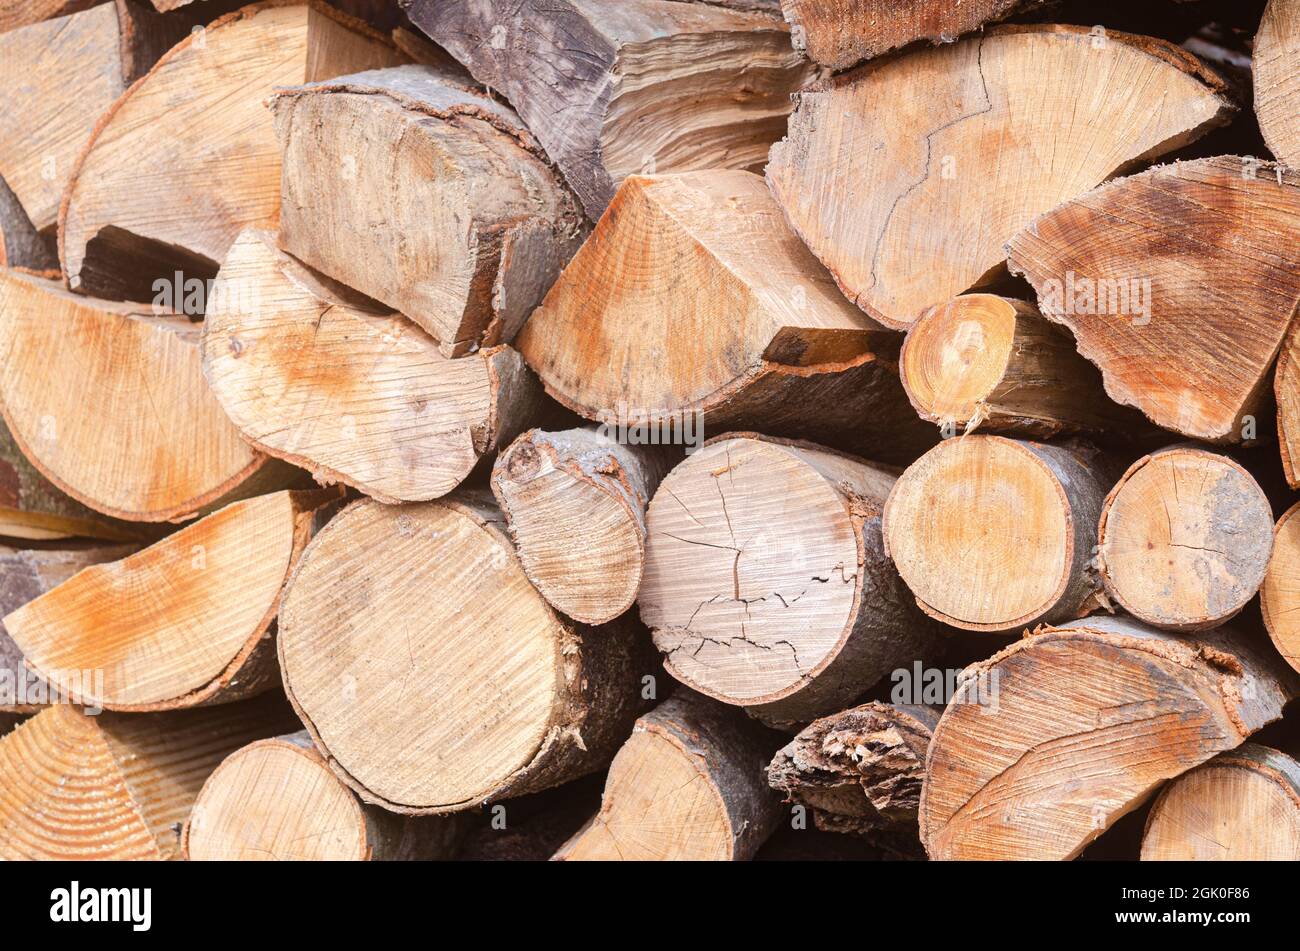 Raccogliendo per l'inverno una miscela di legna da ardere da specie diverse di alberi, ordinatamente accatastato. Legna da ardere per riscaldamento e cottura. Foto Stock